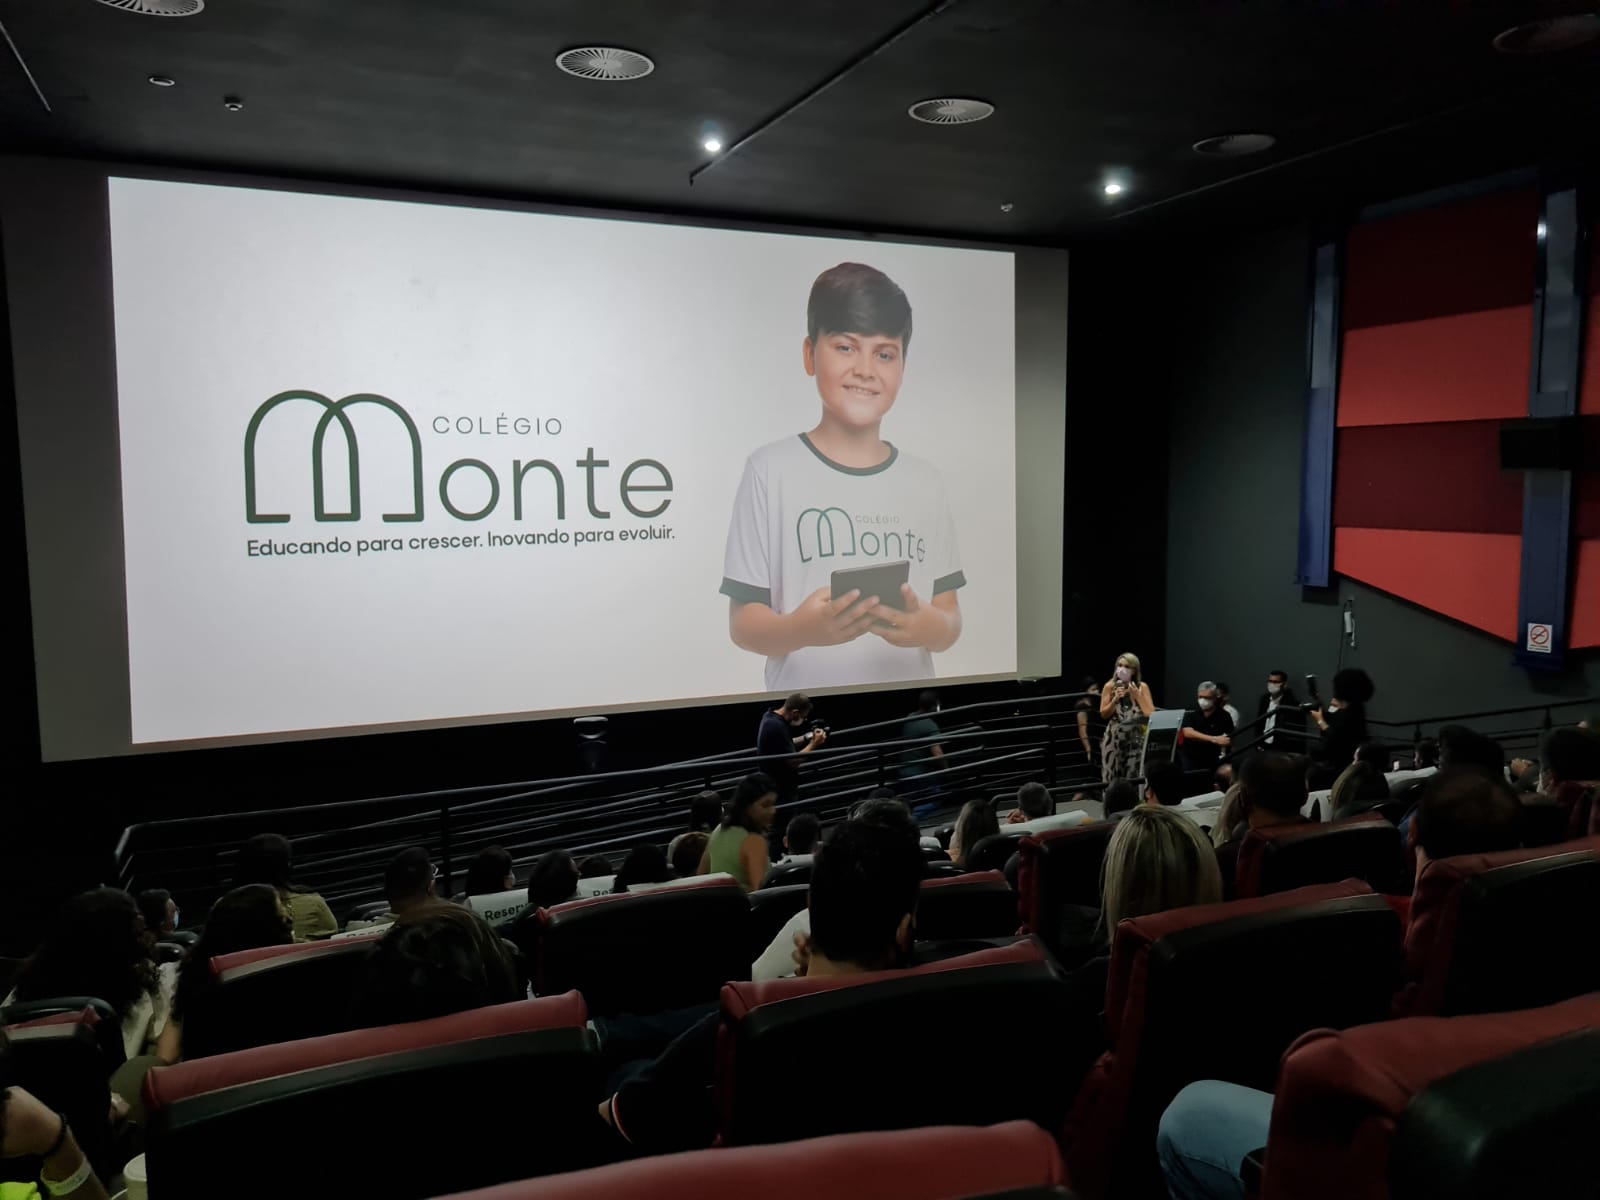 Colégio Monte chega a Natal com proposta inovadora desde a localização a educação moderna e disruptiva